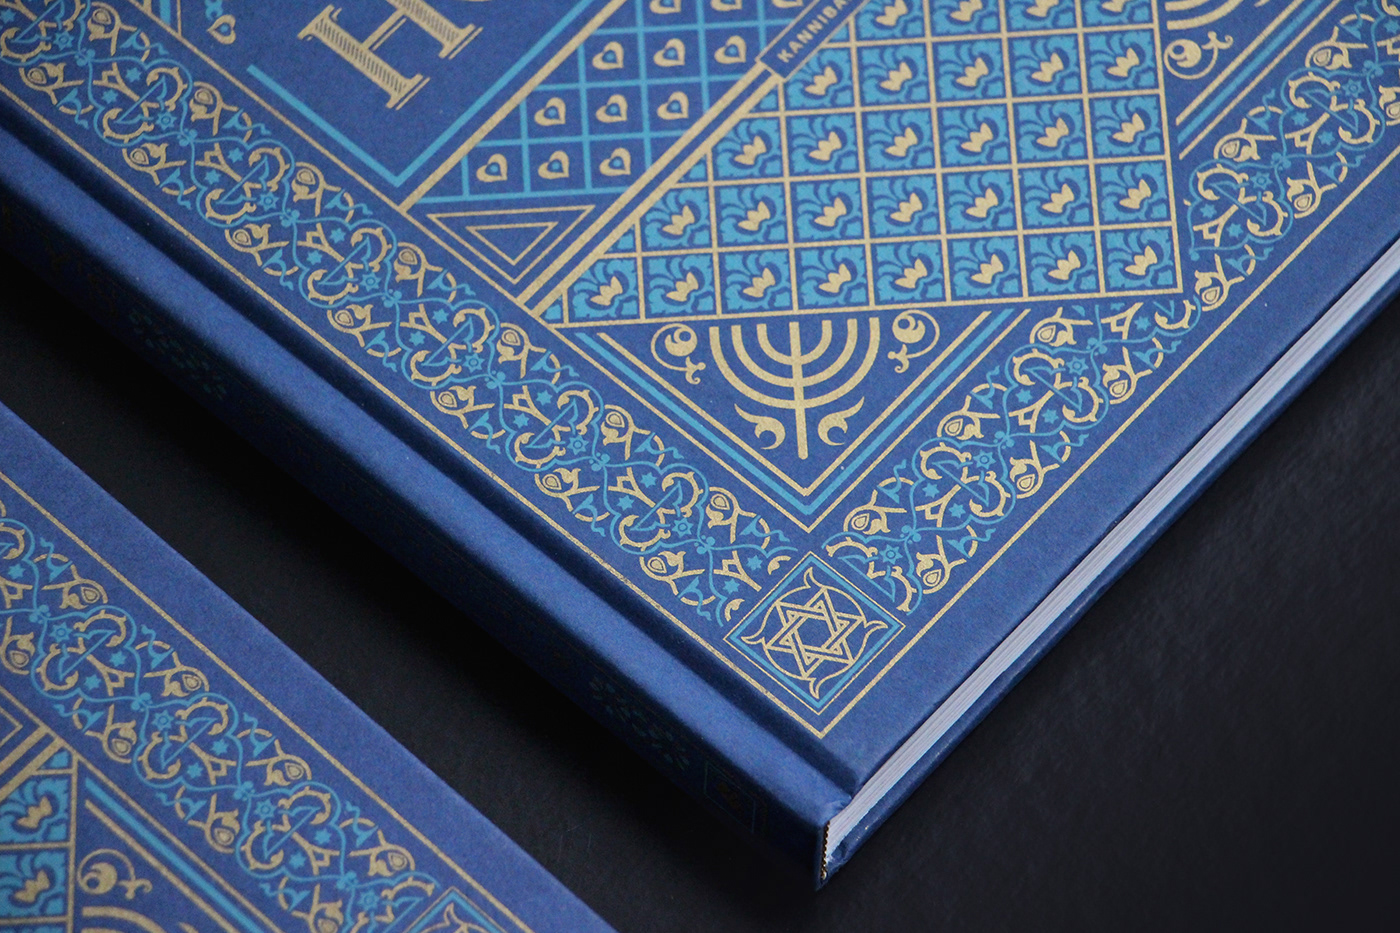 jewish restaurant Jewish kitchen book design cookbook ornaments cover design gold kosher sabbath belgium